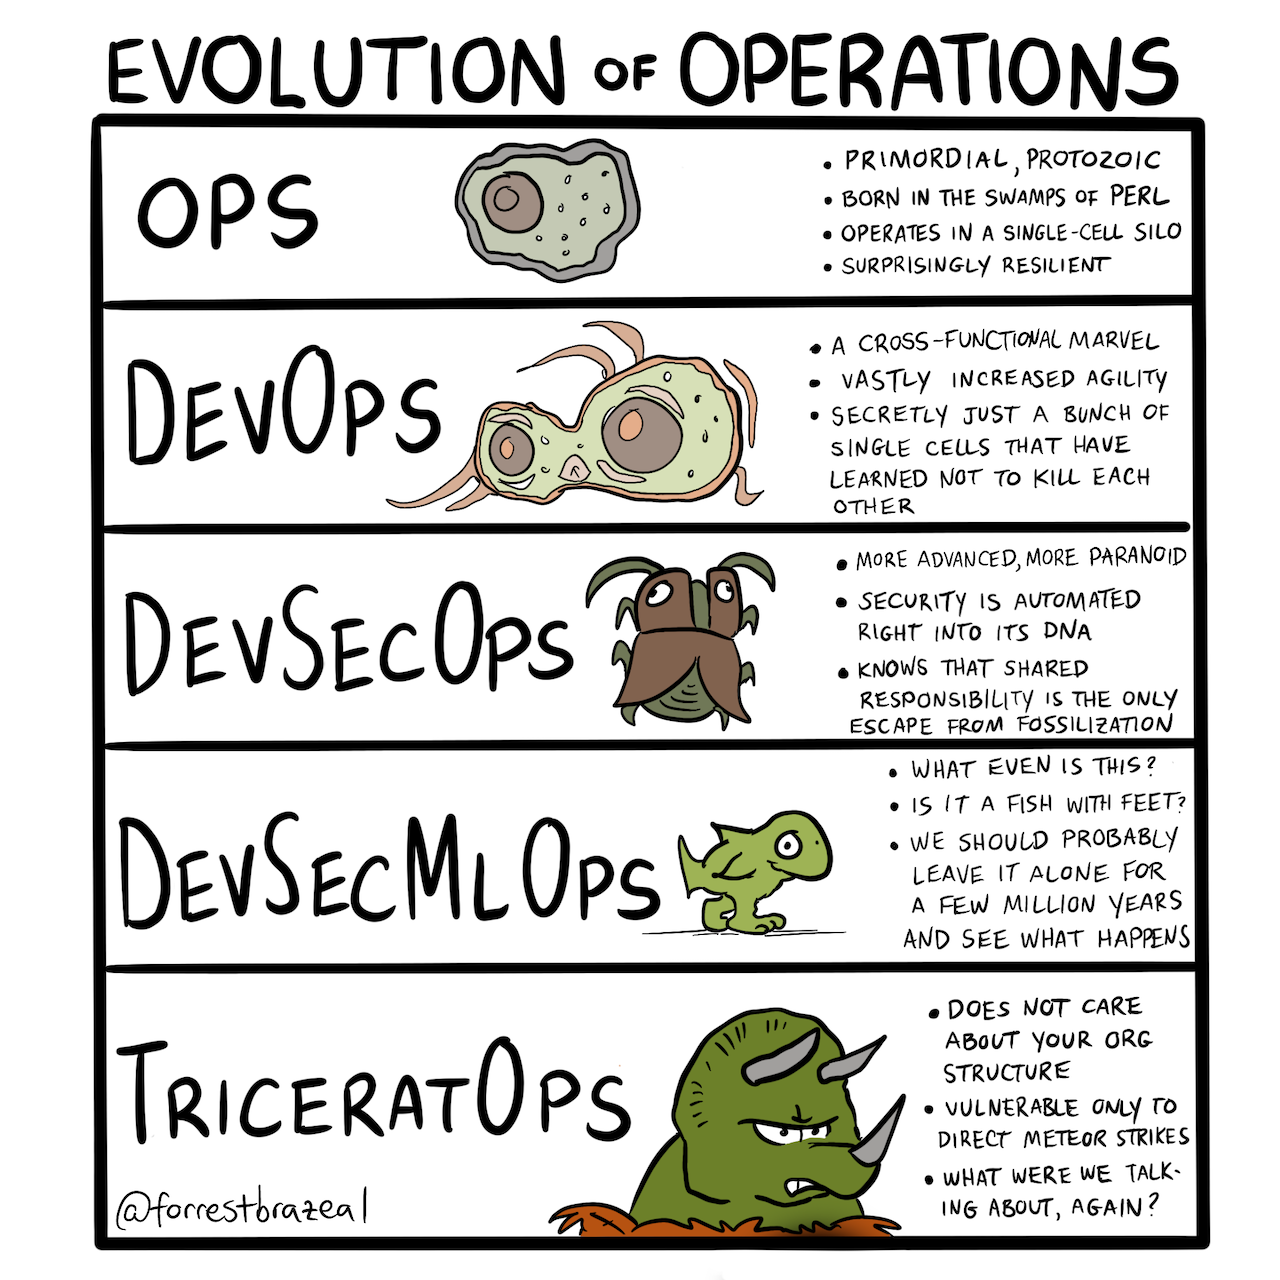 Evolution of Ops